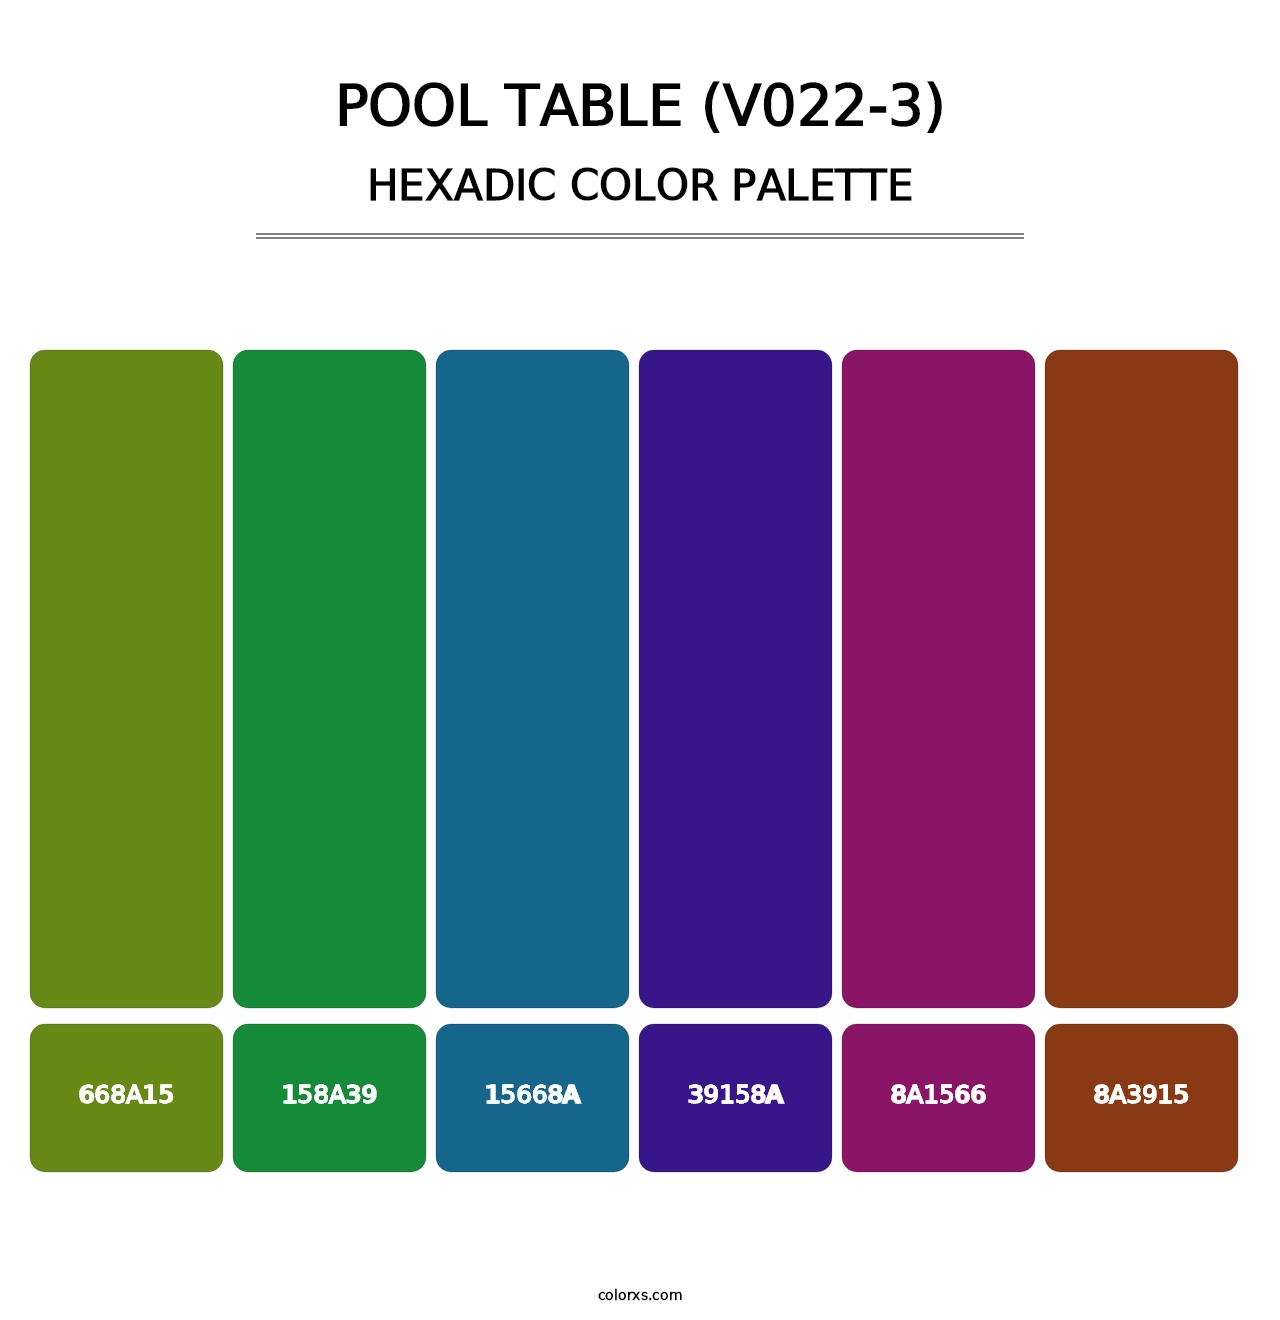 Pool Table (V022-3) - Hexadic Color Palette